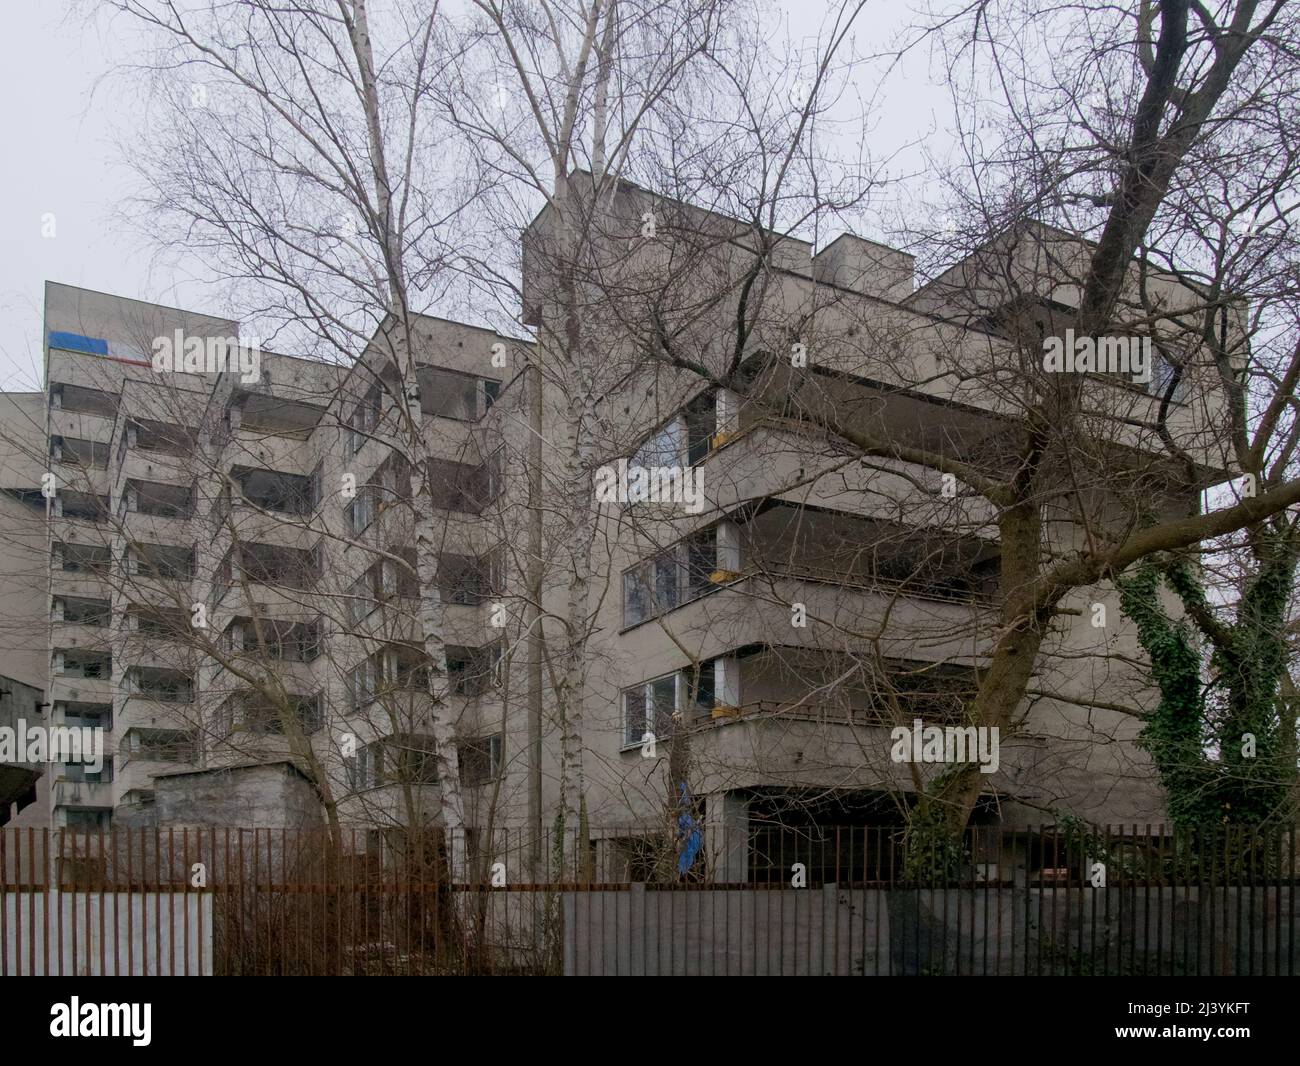 "Maison russe" alias "Szpiegowo" (village de Spy) - ancien domaine soviétique/russe, Varsovie, Pologne Banque D'Images